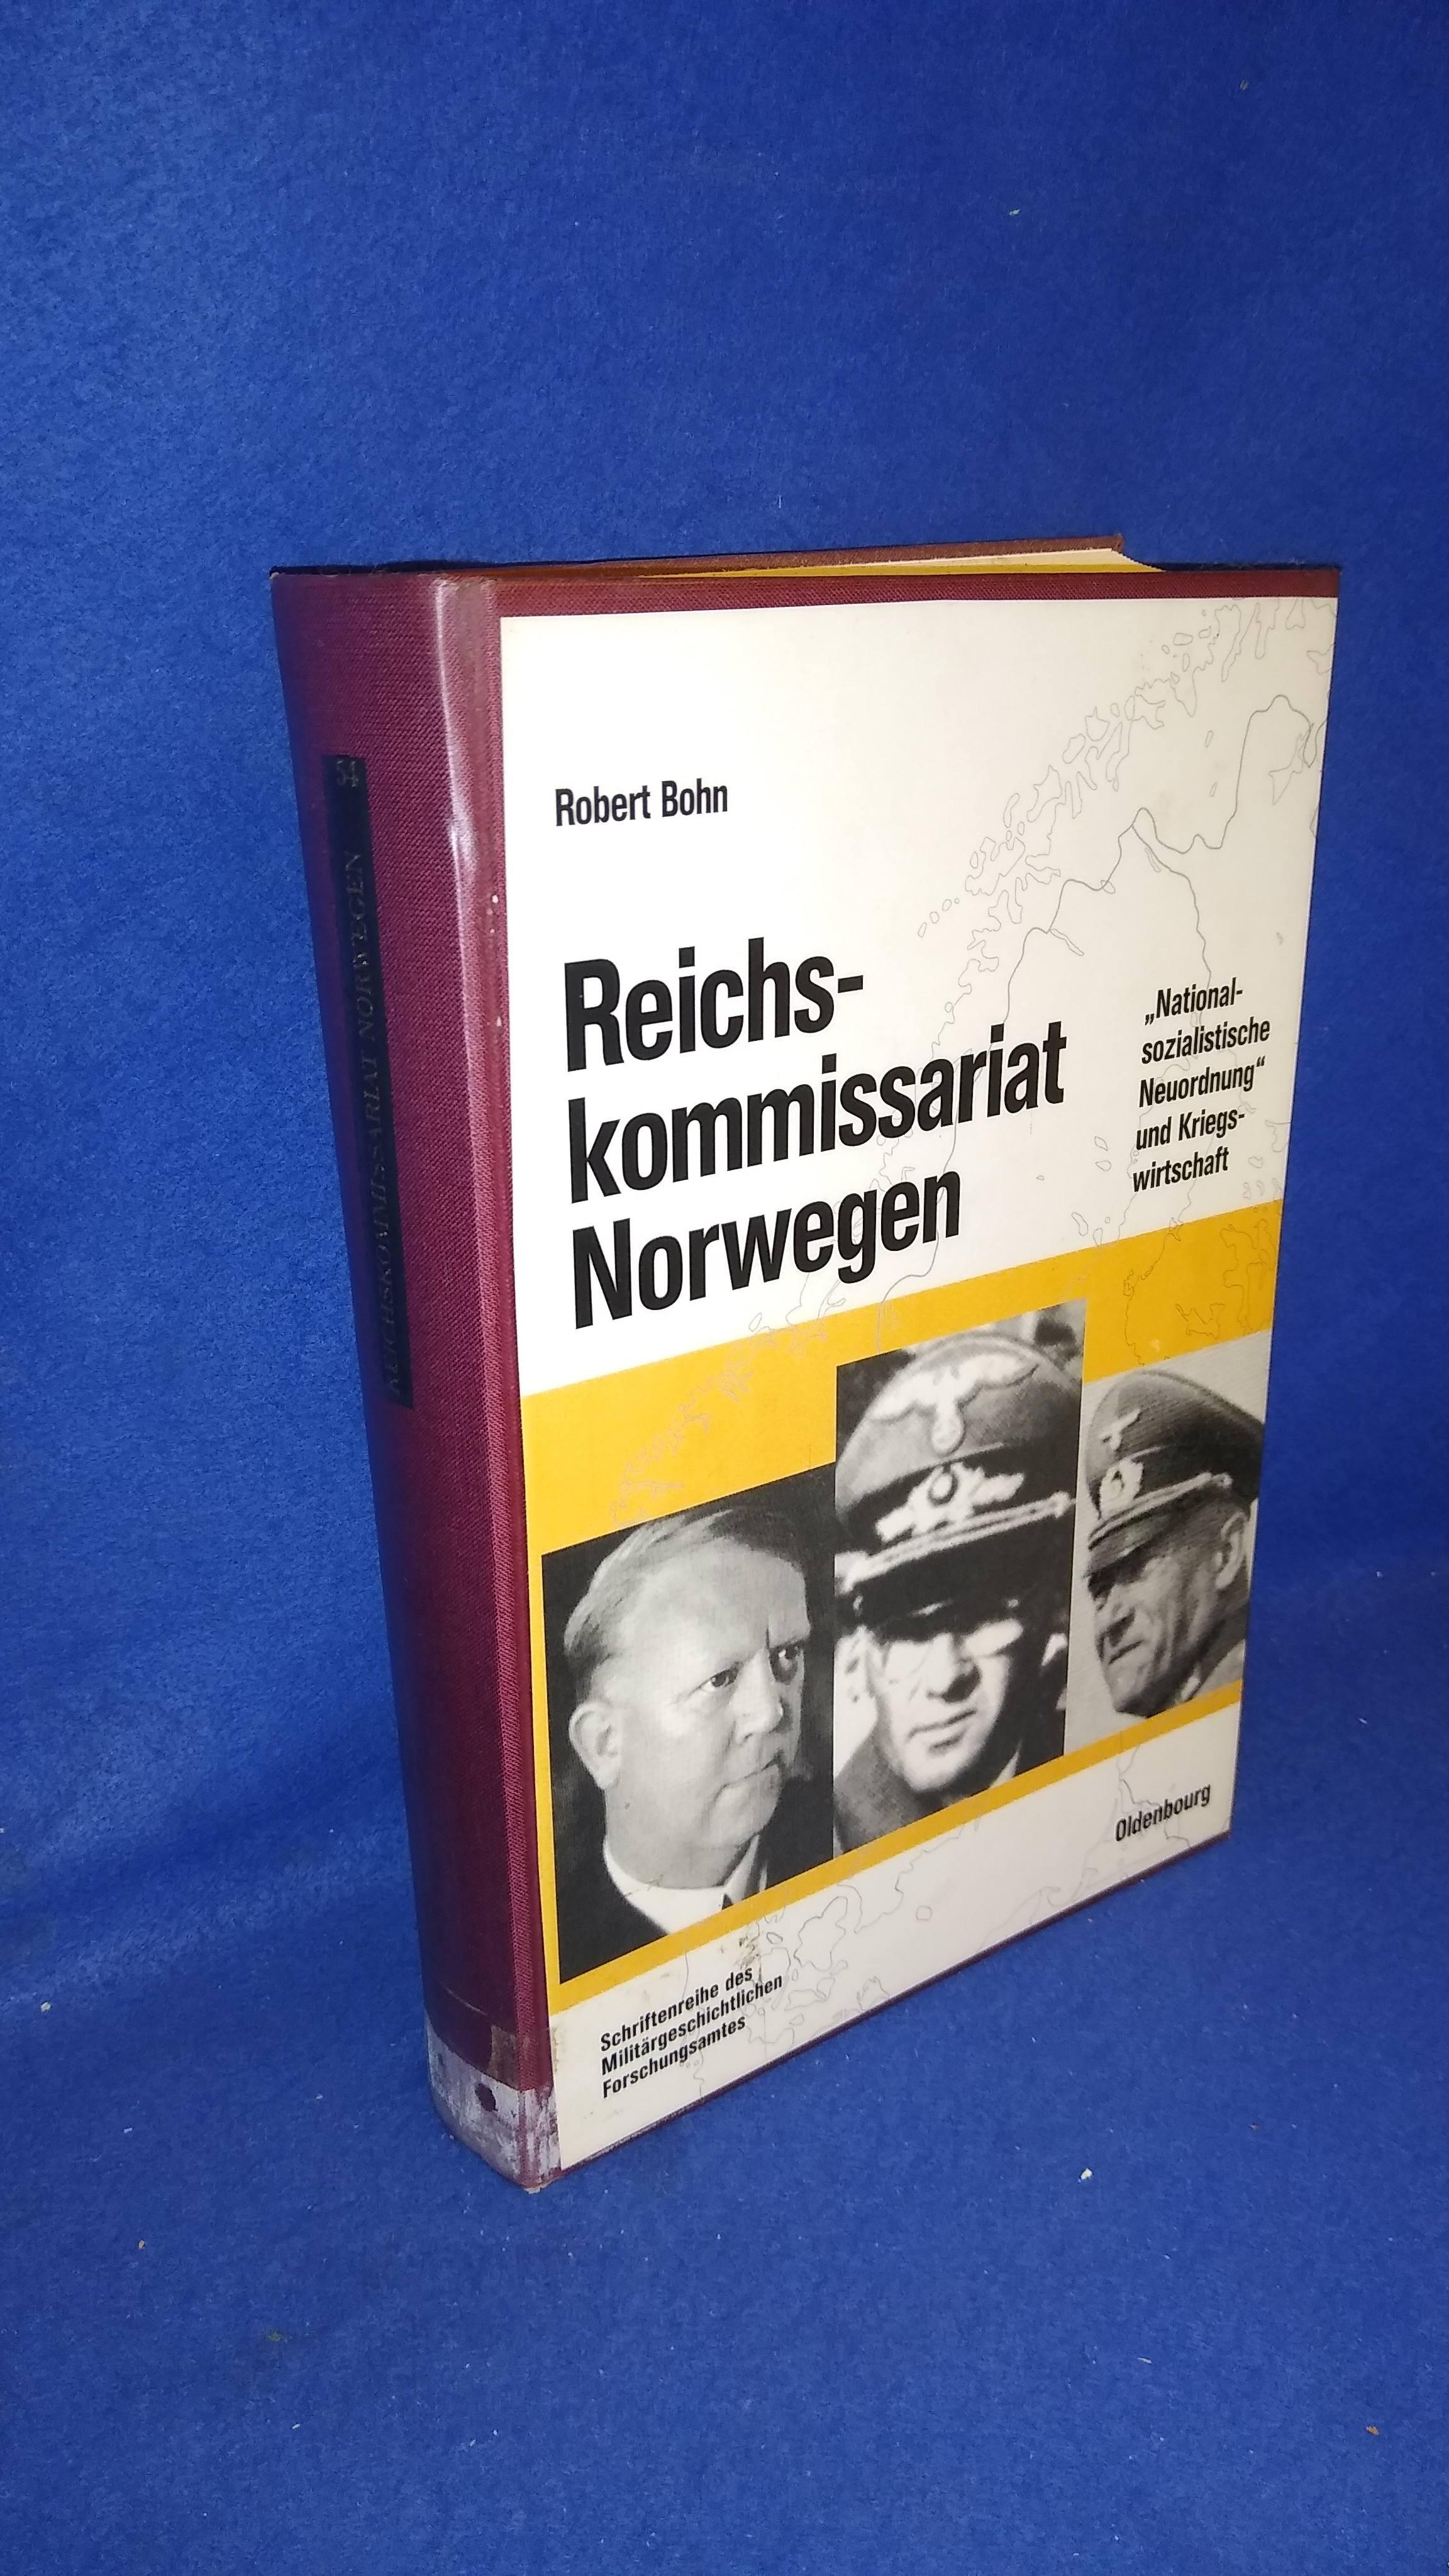 Beiträge zur Militärgeschichte, Band 54: Reichskommissariat Norwegen. 'Nationalsozialistische Neuordnung' und Kriegswirtschaft.